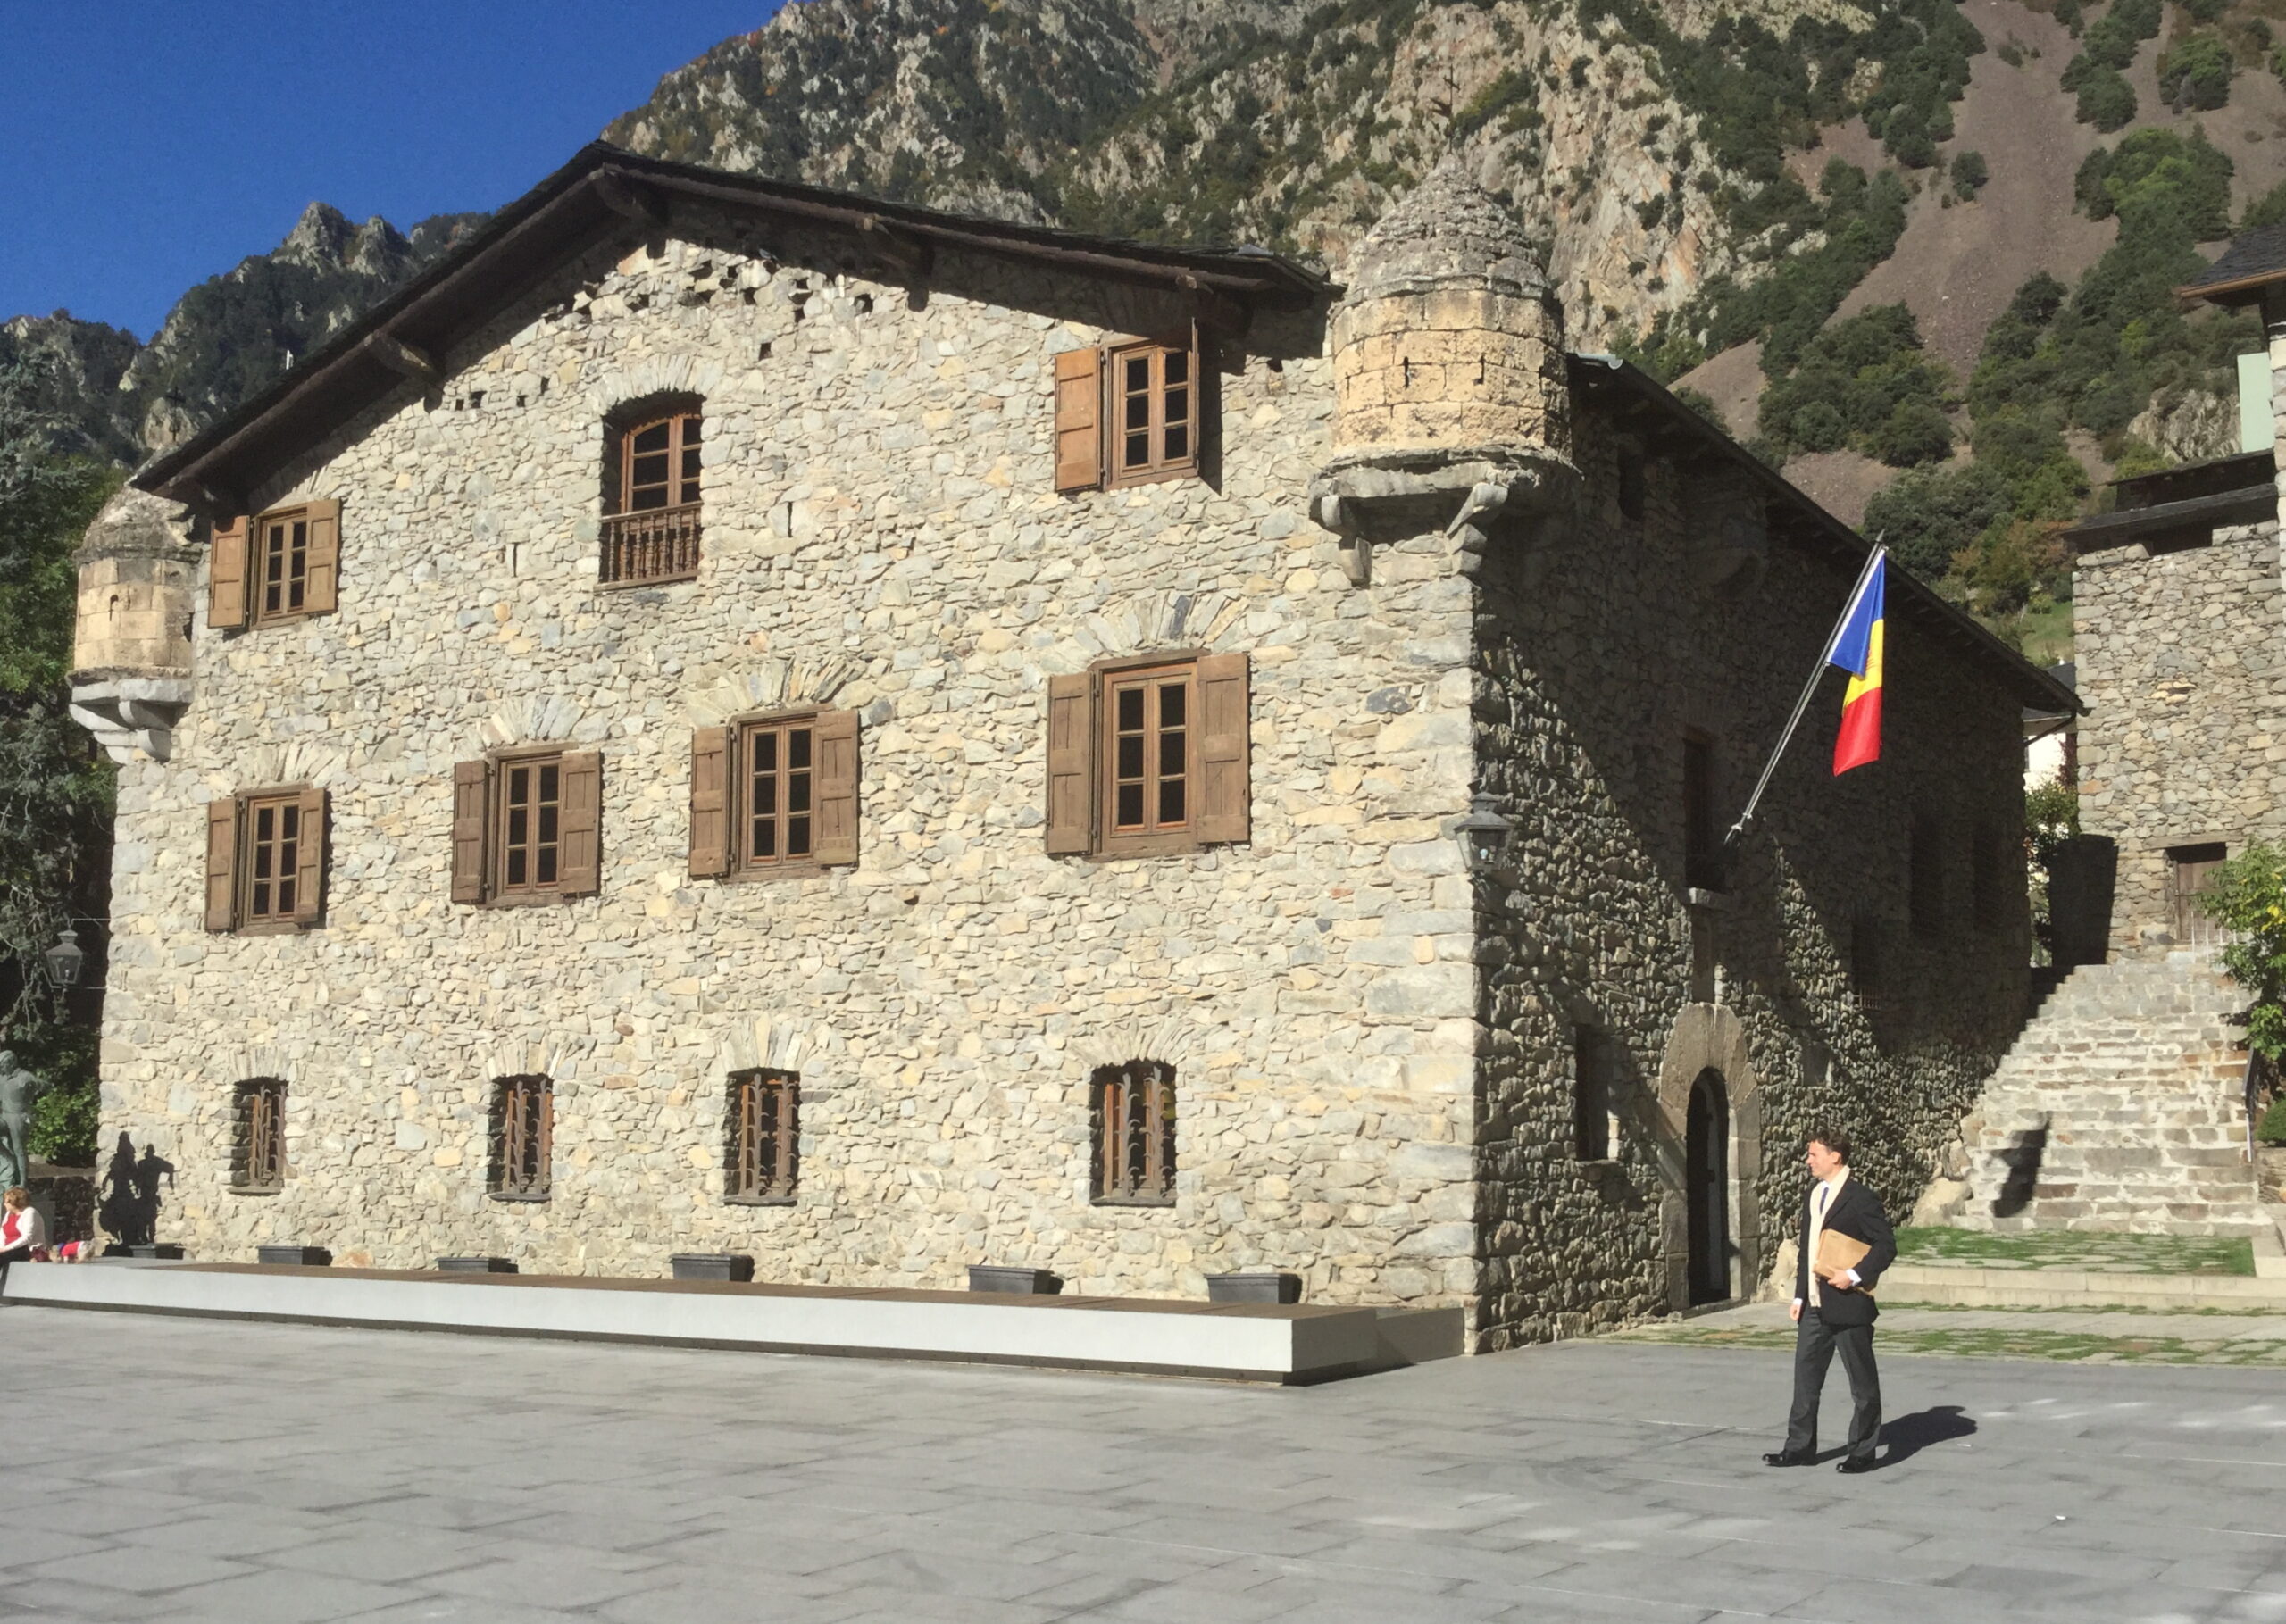 National monument of Andorra - Casa de la Vall Andorra